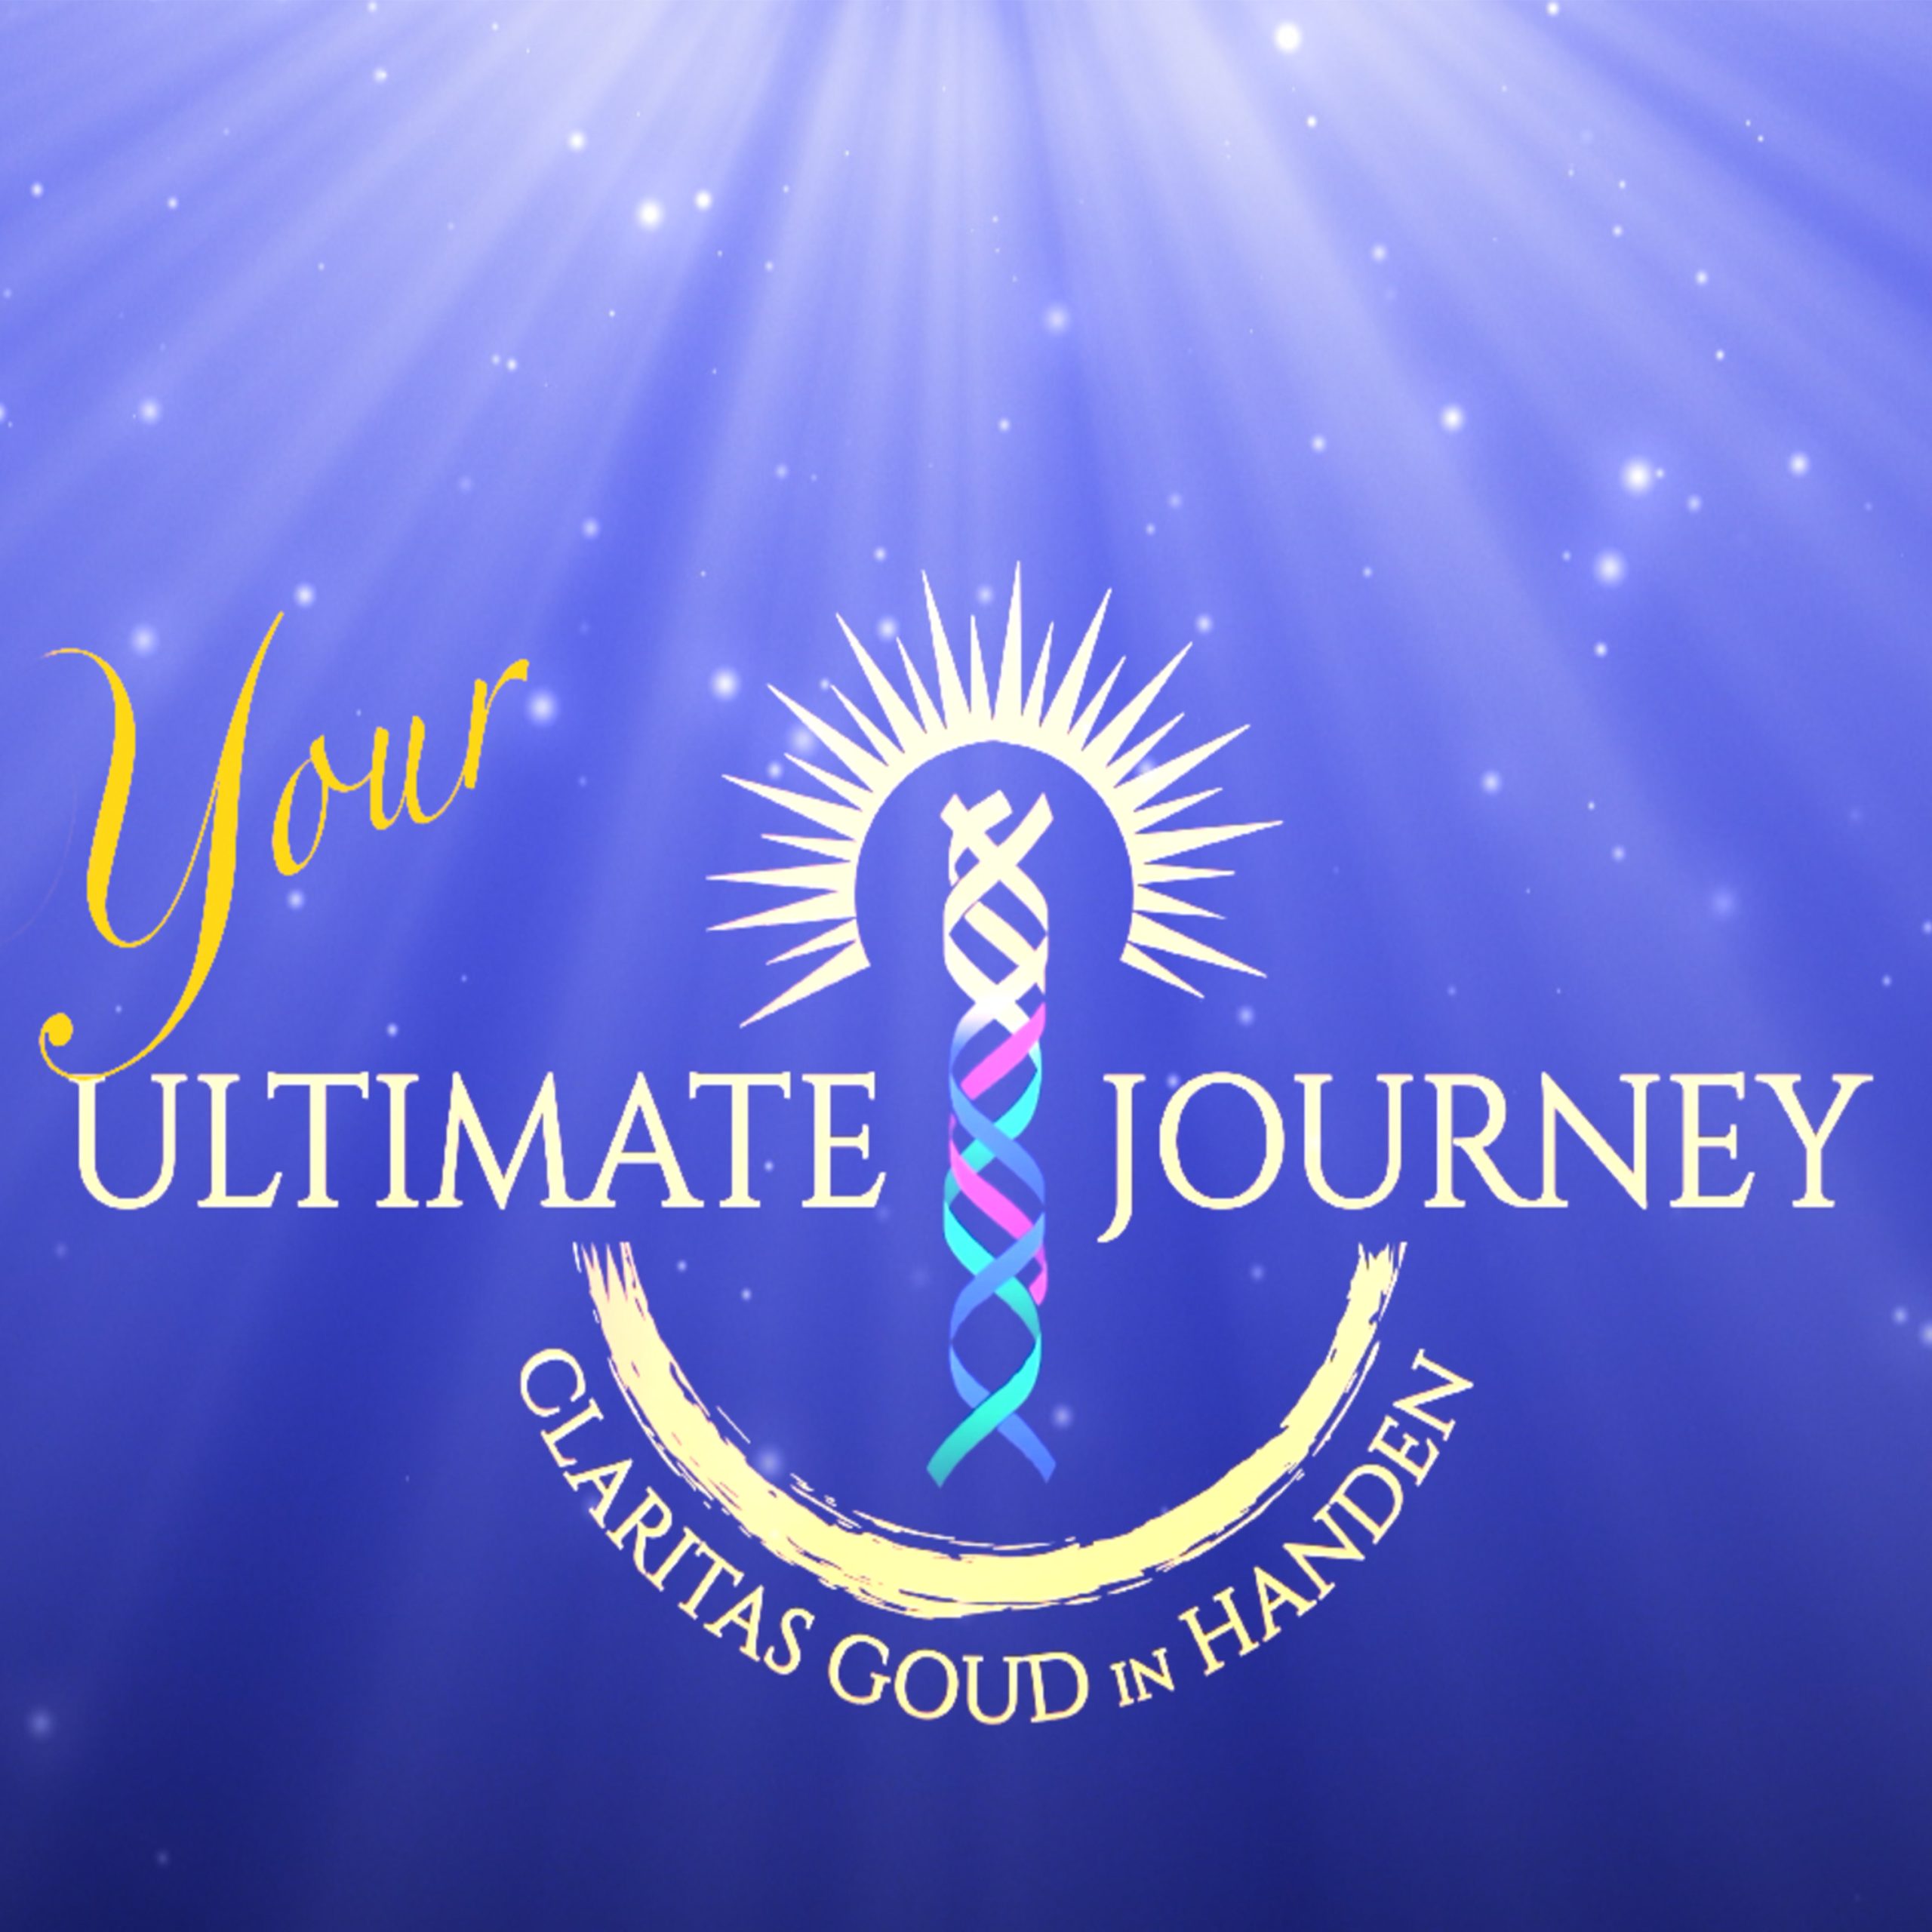 Your Ultimate Journey Compleet Reispakket incl. 40 dagen detox – Boek nu!